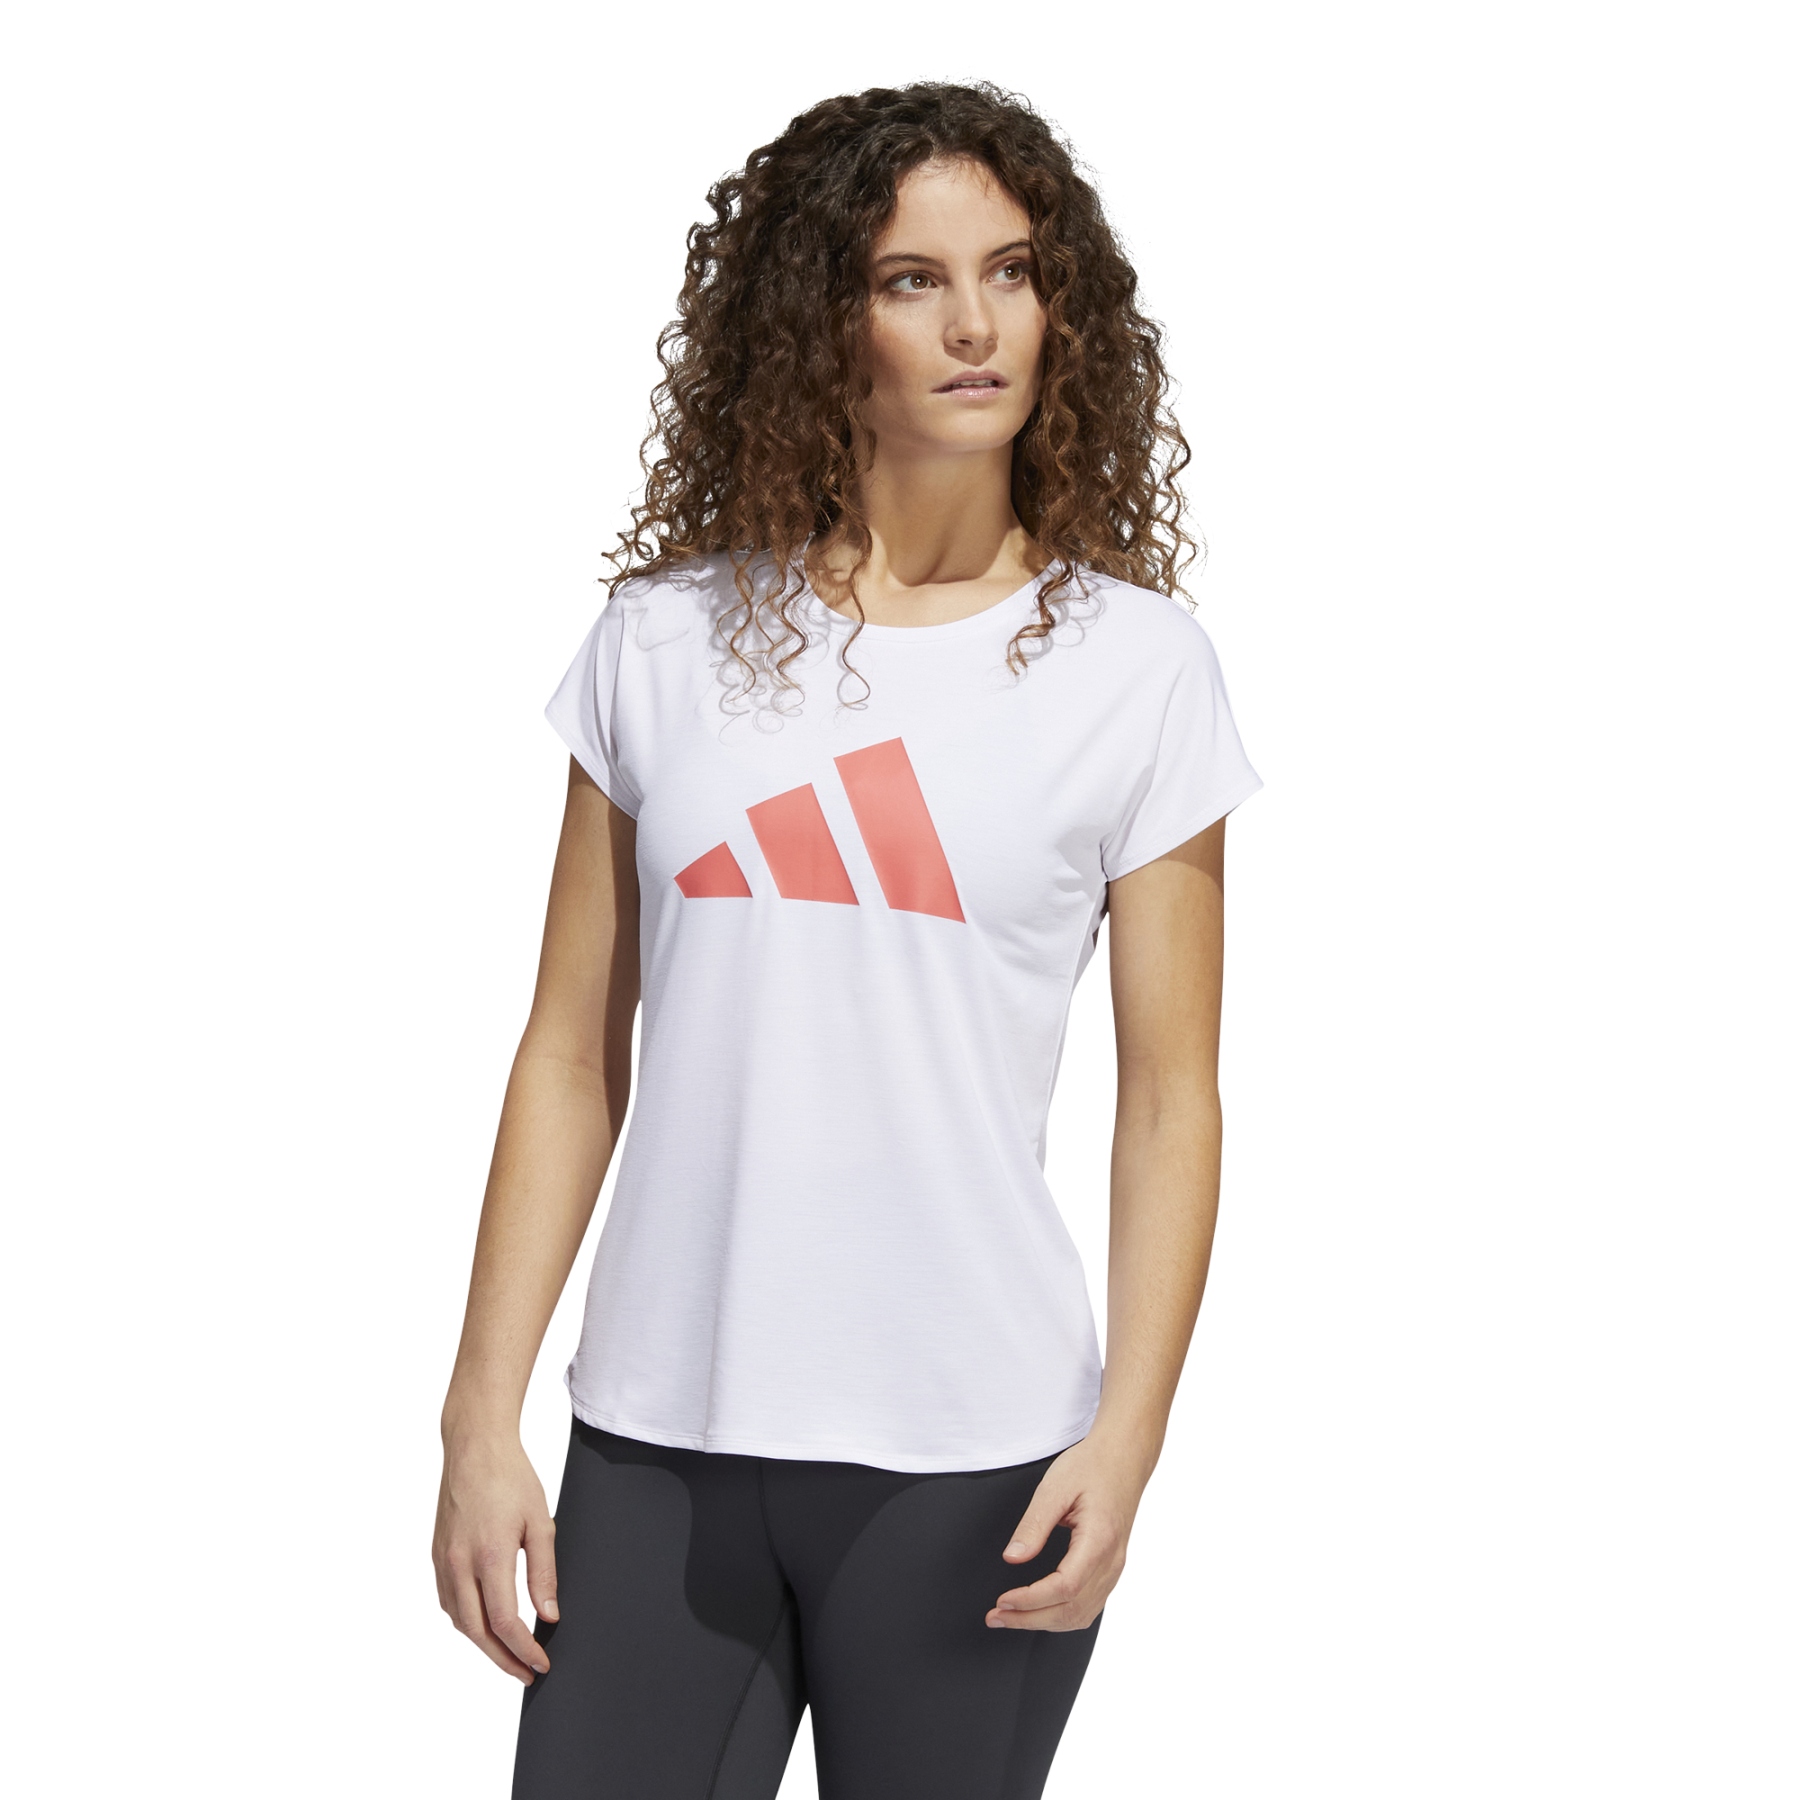 Bild von adidas Frauen 3-Streifen Training T-Shirt - weiss/semi turbo HD9568